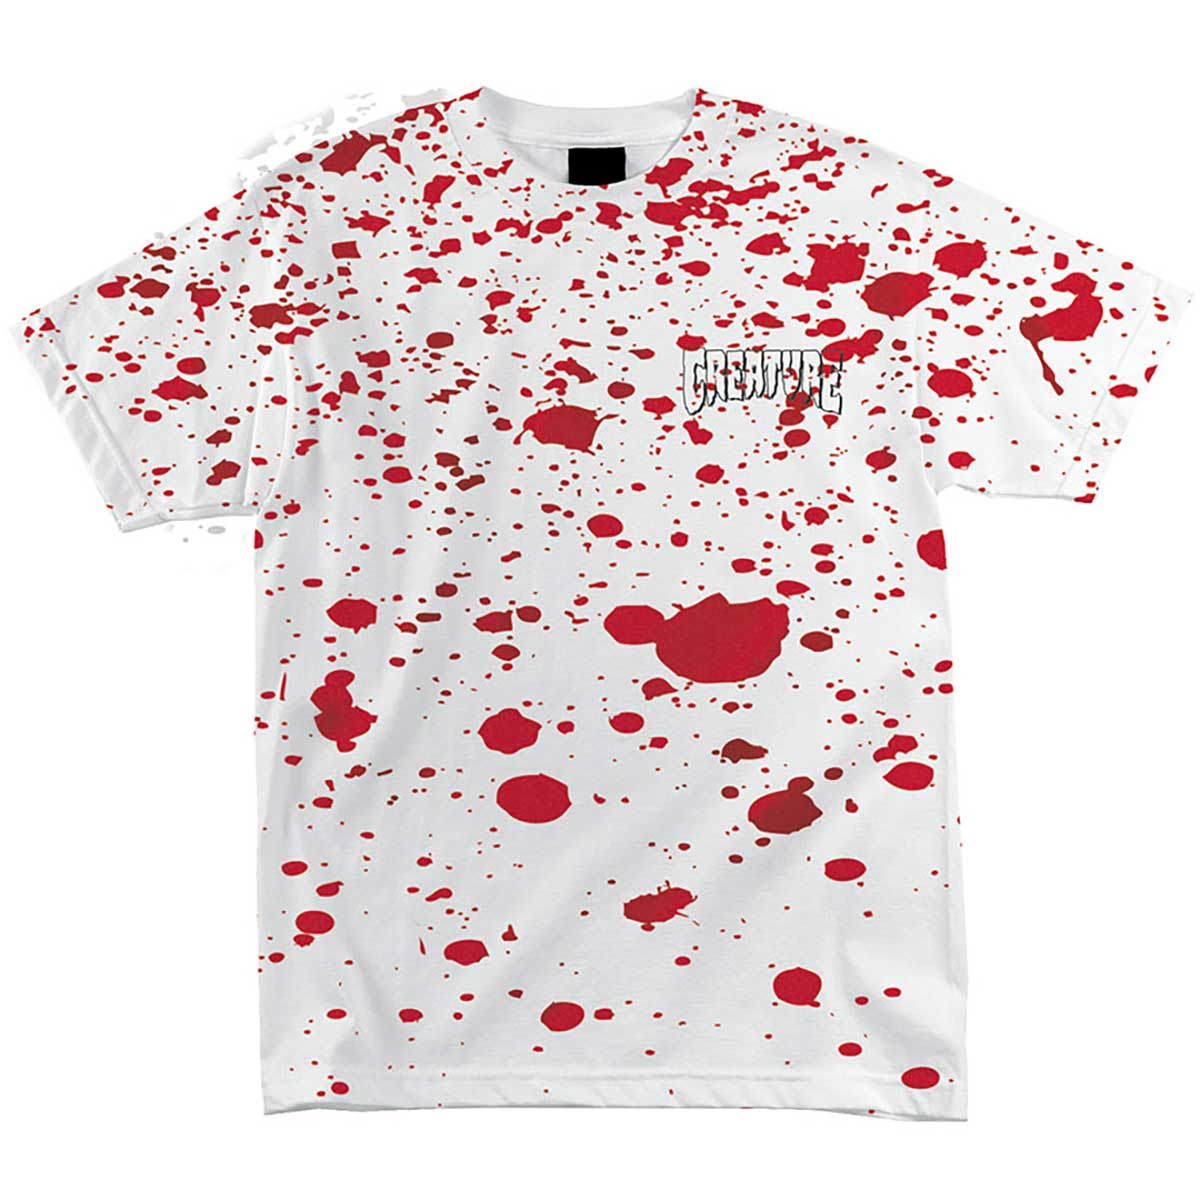 Creature X Gwar S/S Tee Shirt Blood Splatter (size options listed)